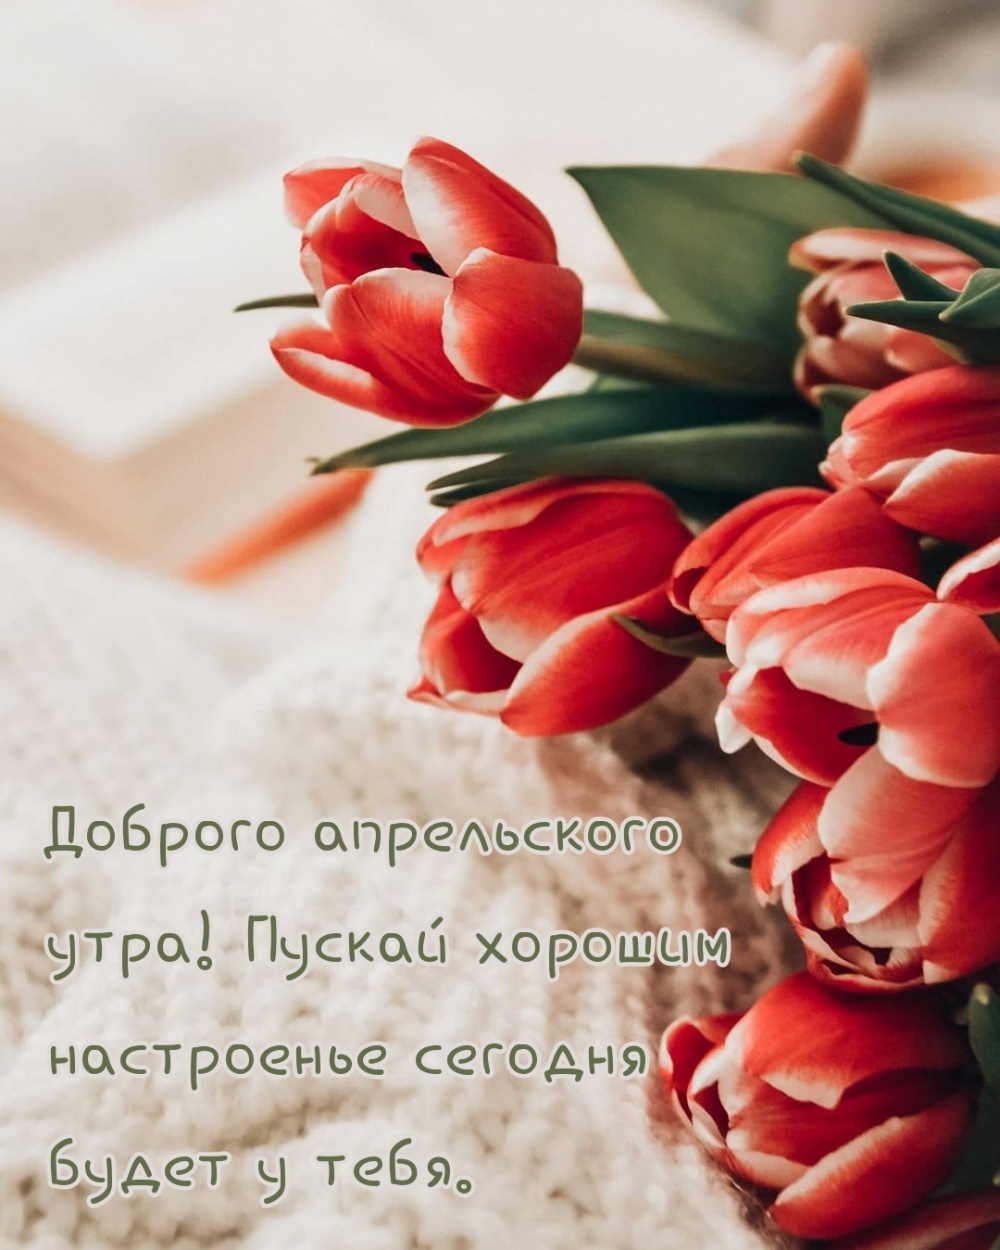 Доброго апрельского утра с красными тюльпанами